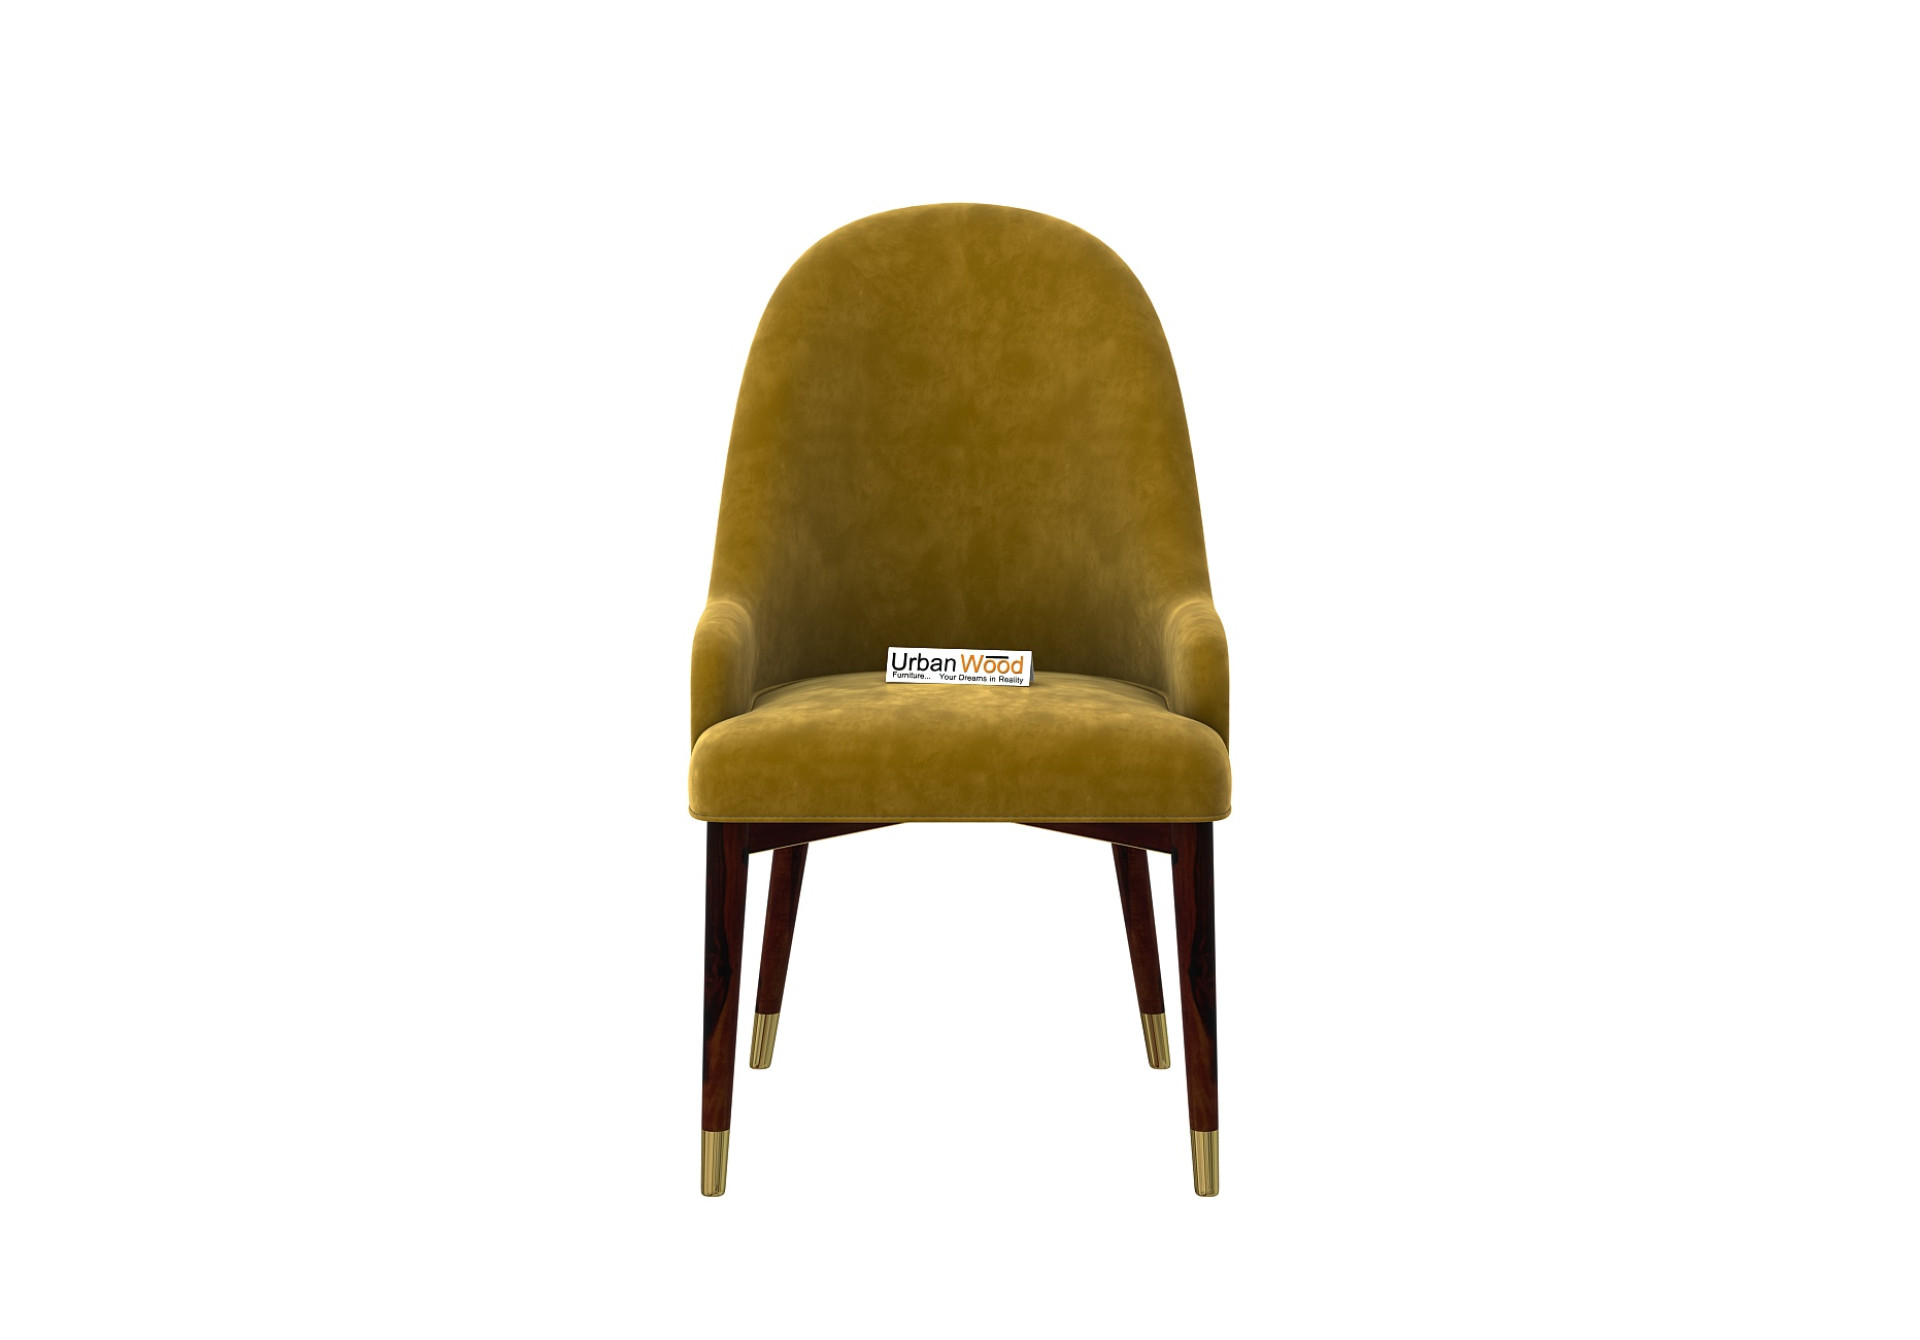 Nordic Dining Chair - Set Of 2 (Velvet, Amber Gold)